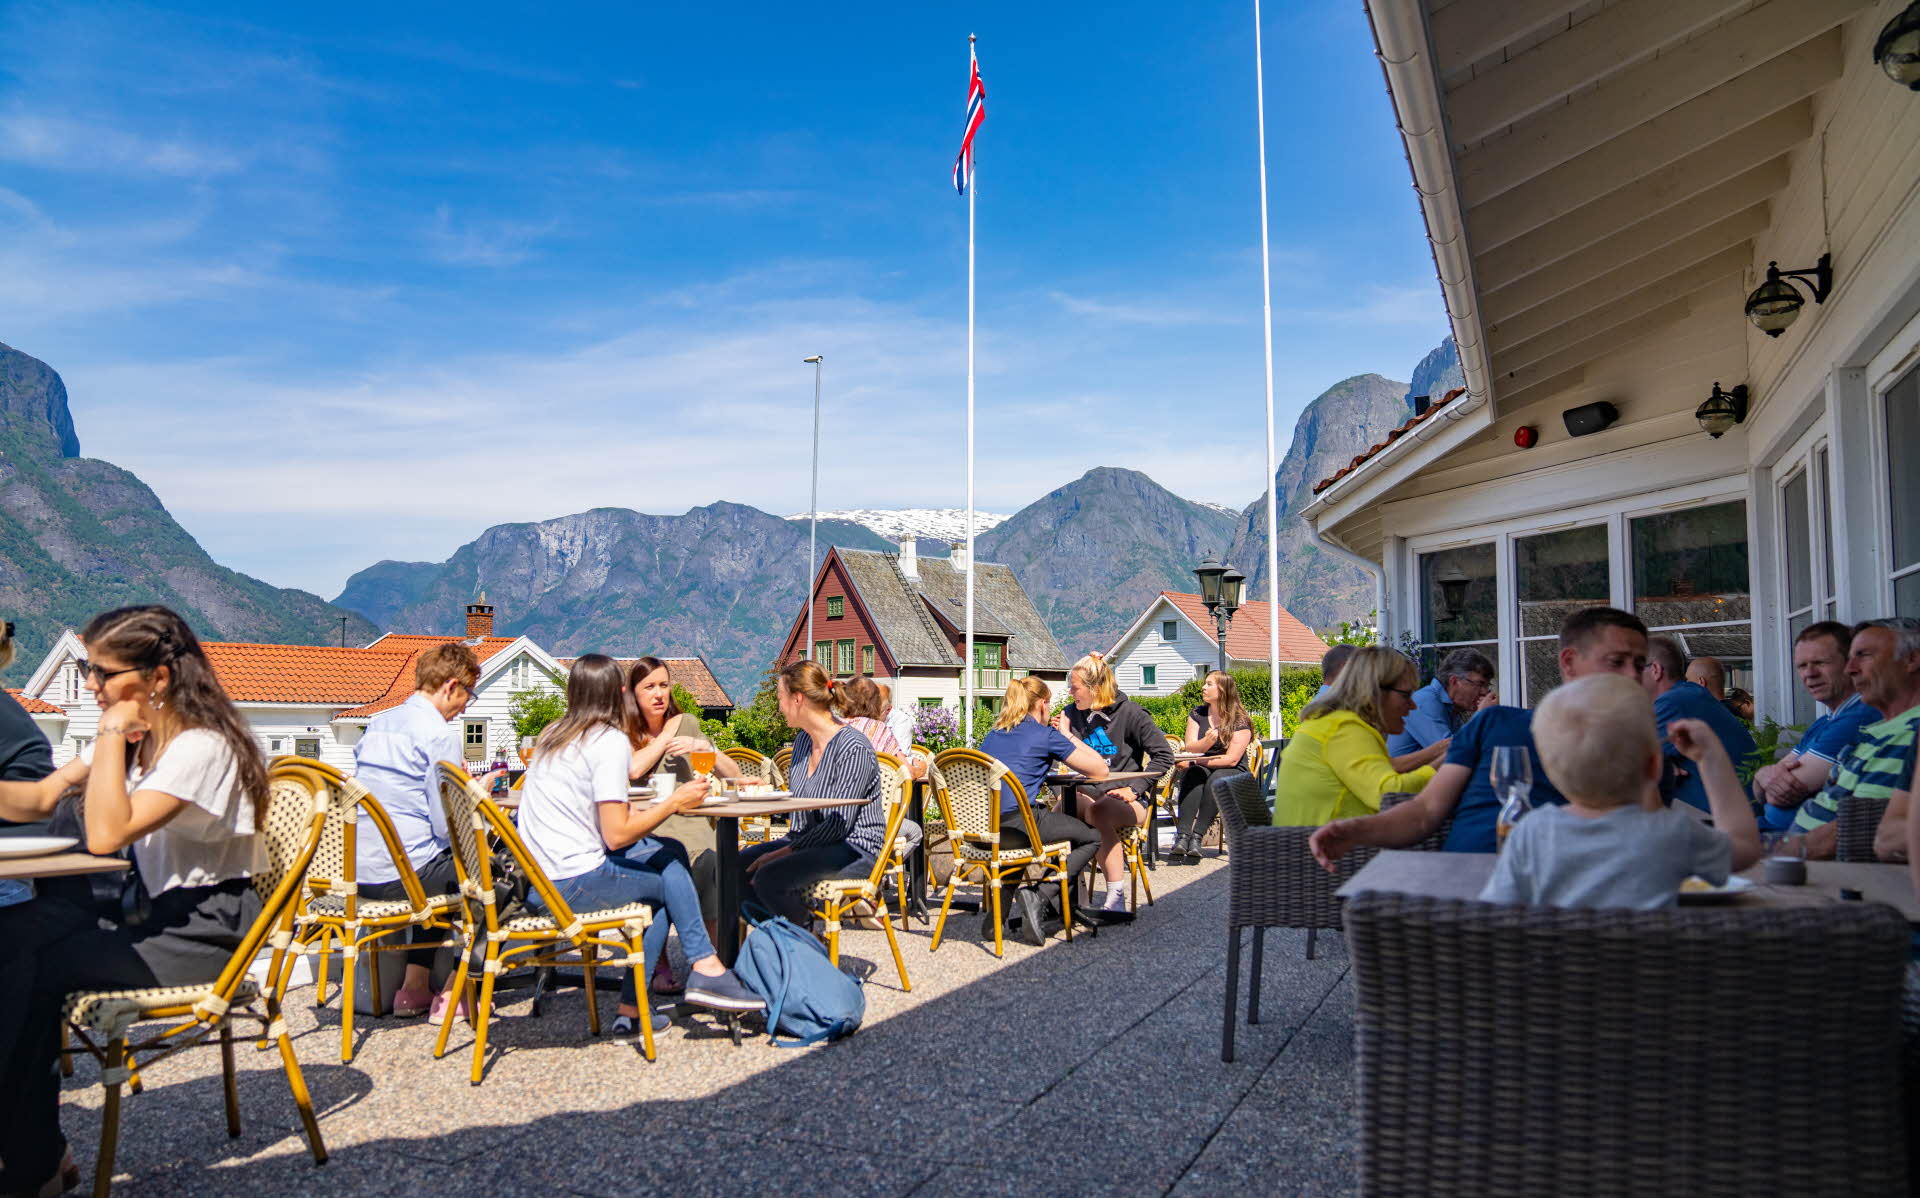 Unas personas sentadas en unas mesas en la terraza del Hotel Aurlandsfjord. Al fondo, unas casas y unas montañas altas.